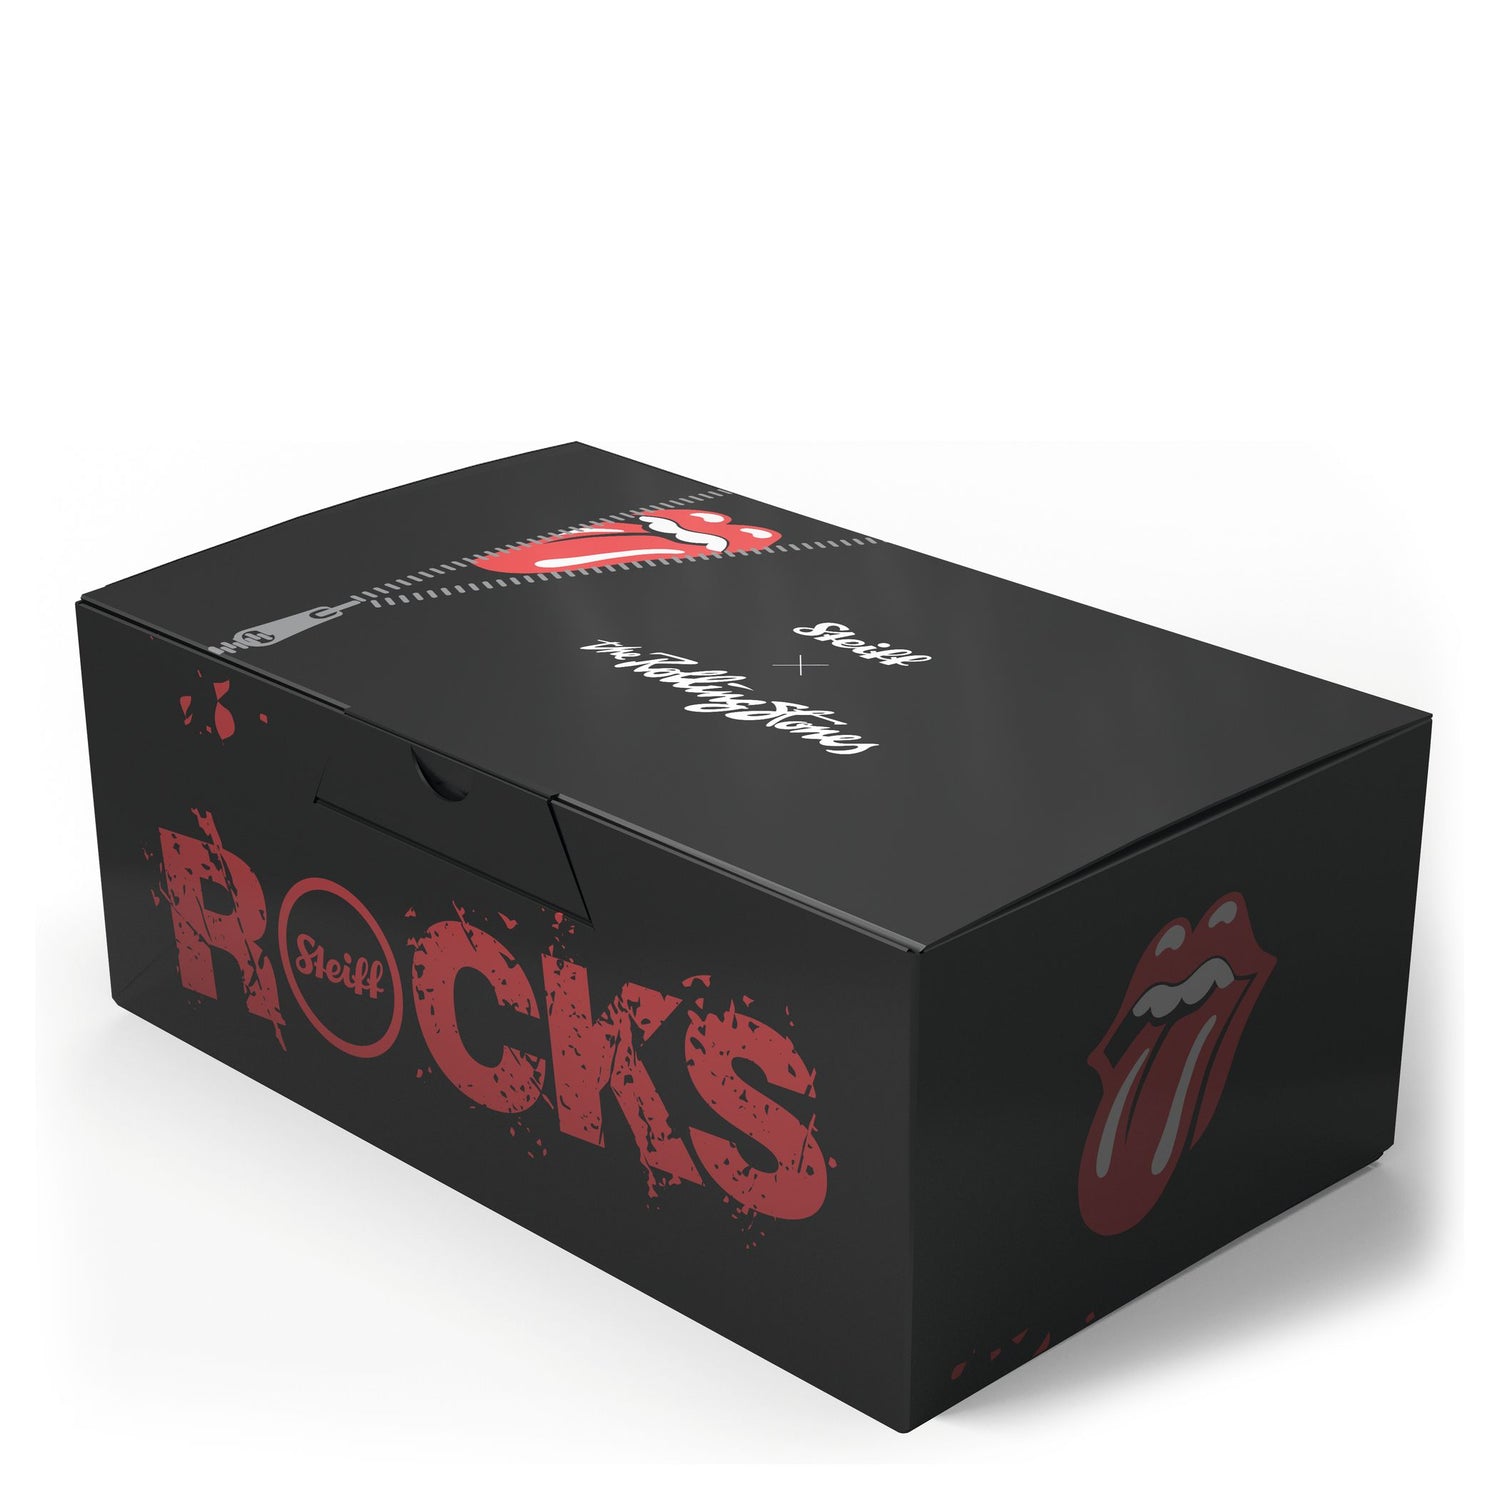 Steiff Rocks! Rolling Stones